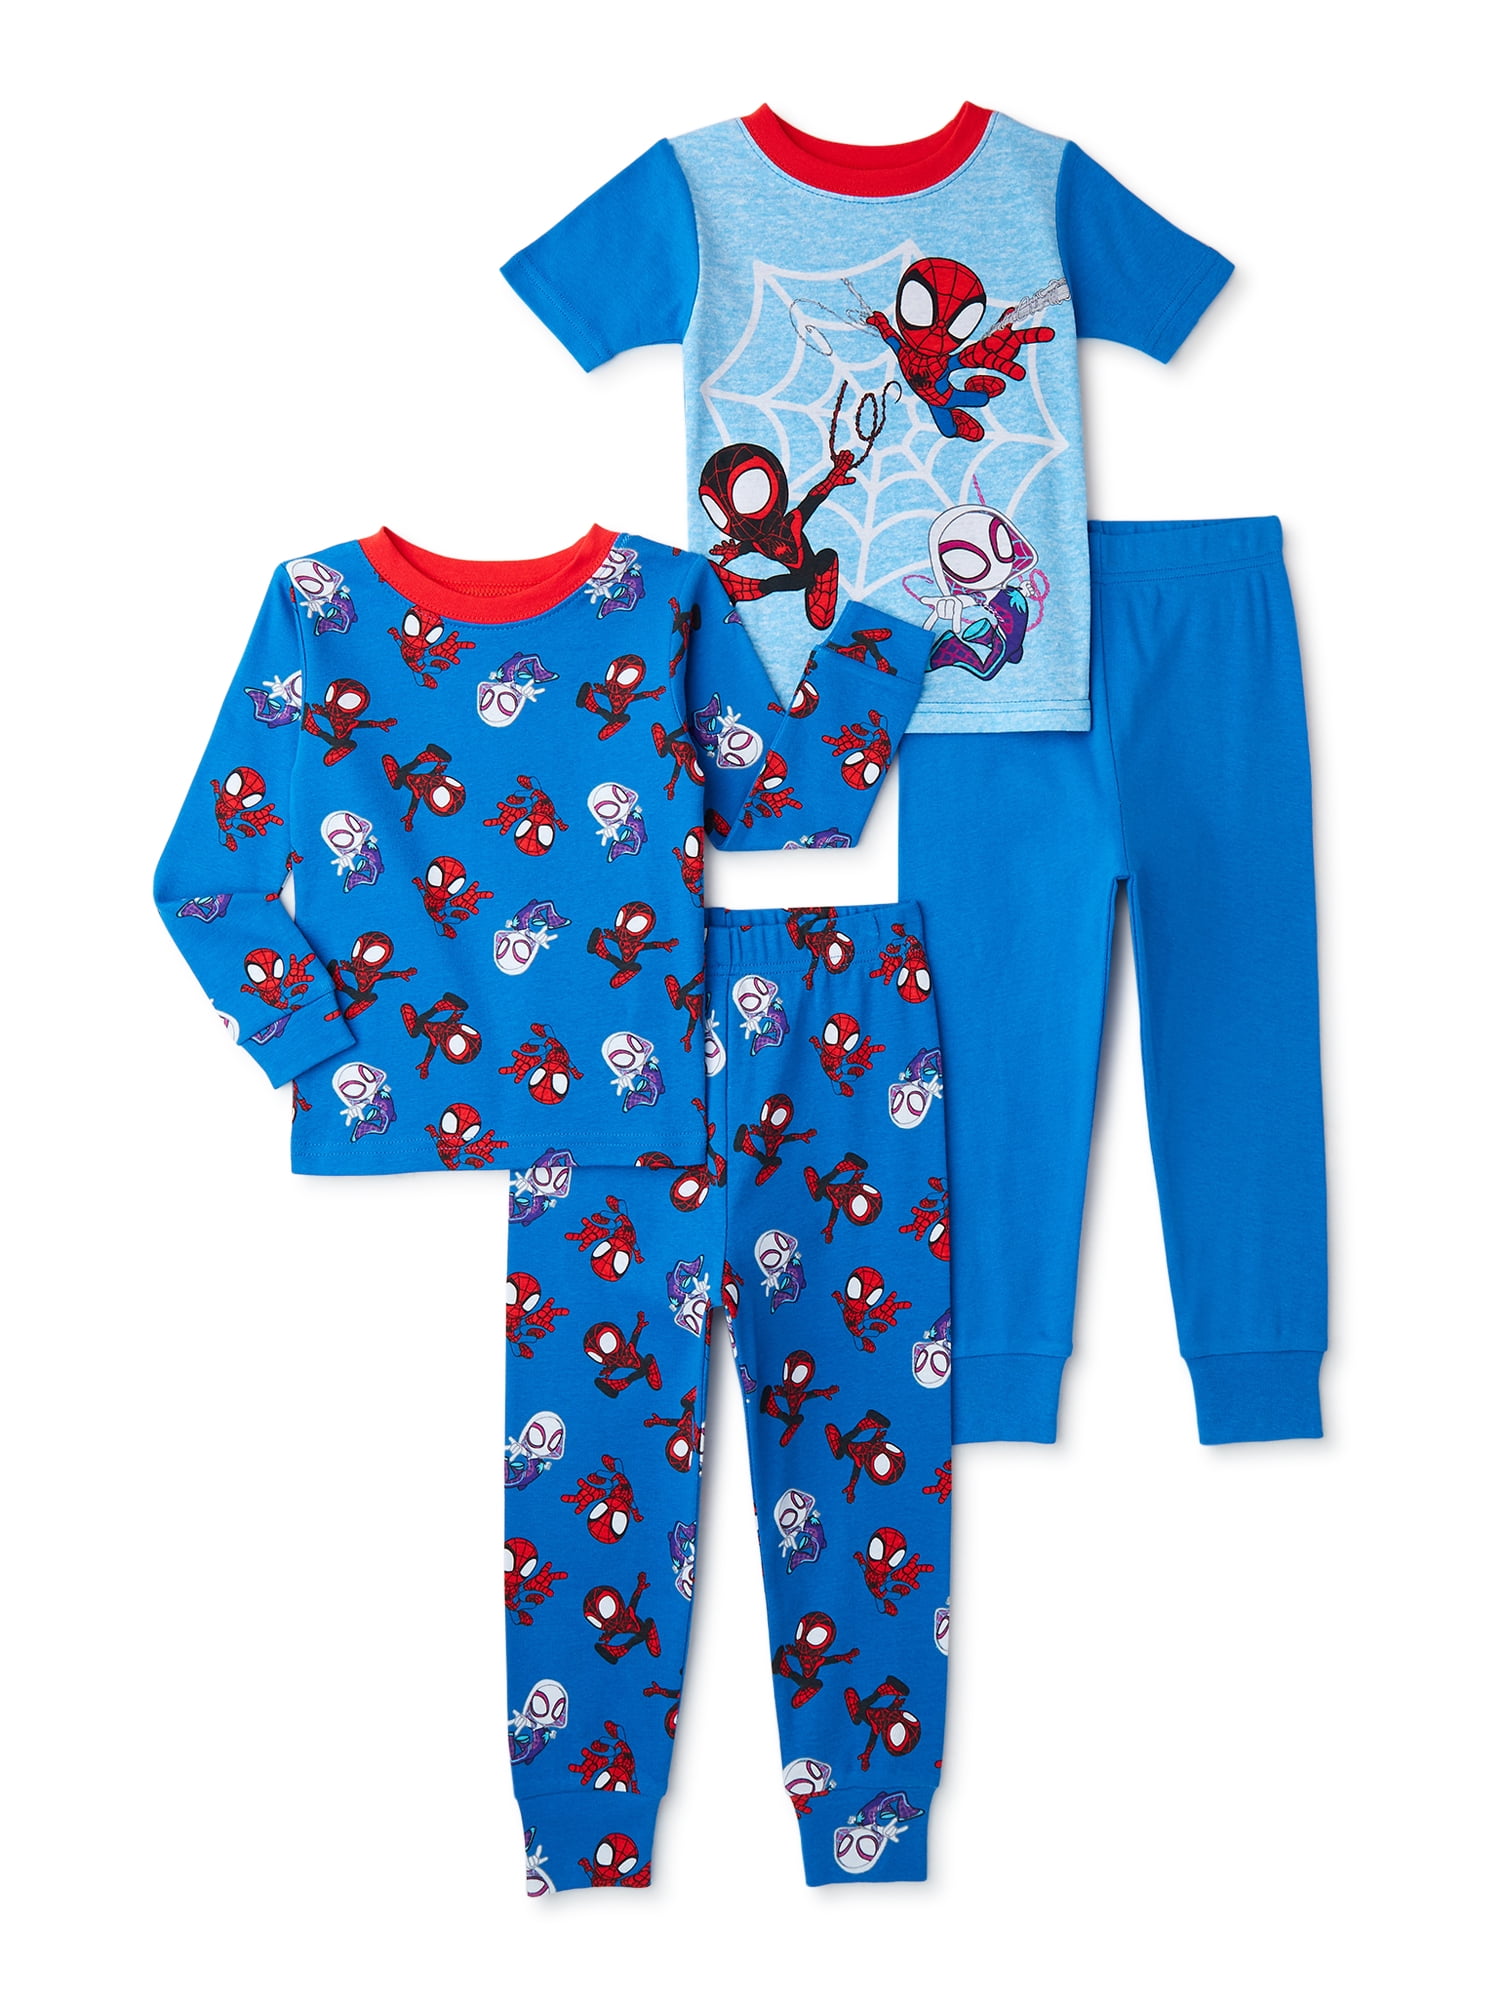 Visiter la boutique MarvelMarvel Boys' Little Spiderman 4-Piece Cotton Pajama Set Spidey Suit Blue 6 